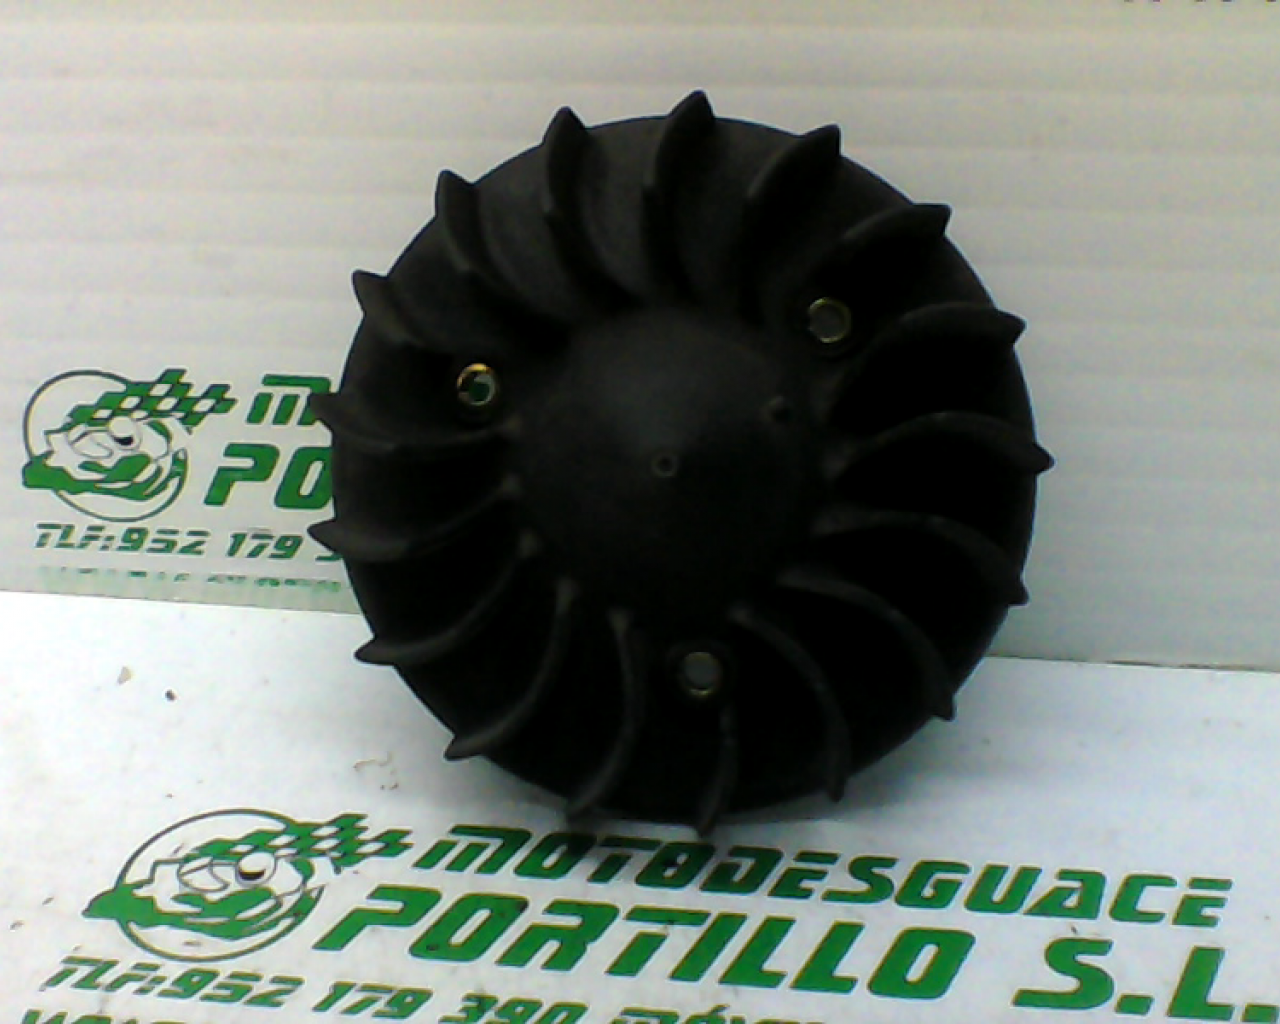 Ventilador del plato magnetico Vespa LX 50 2T (2005-2009)